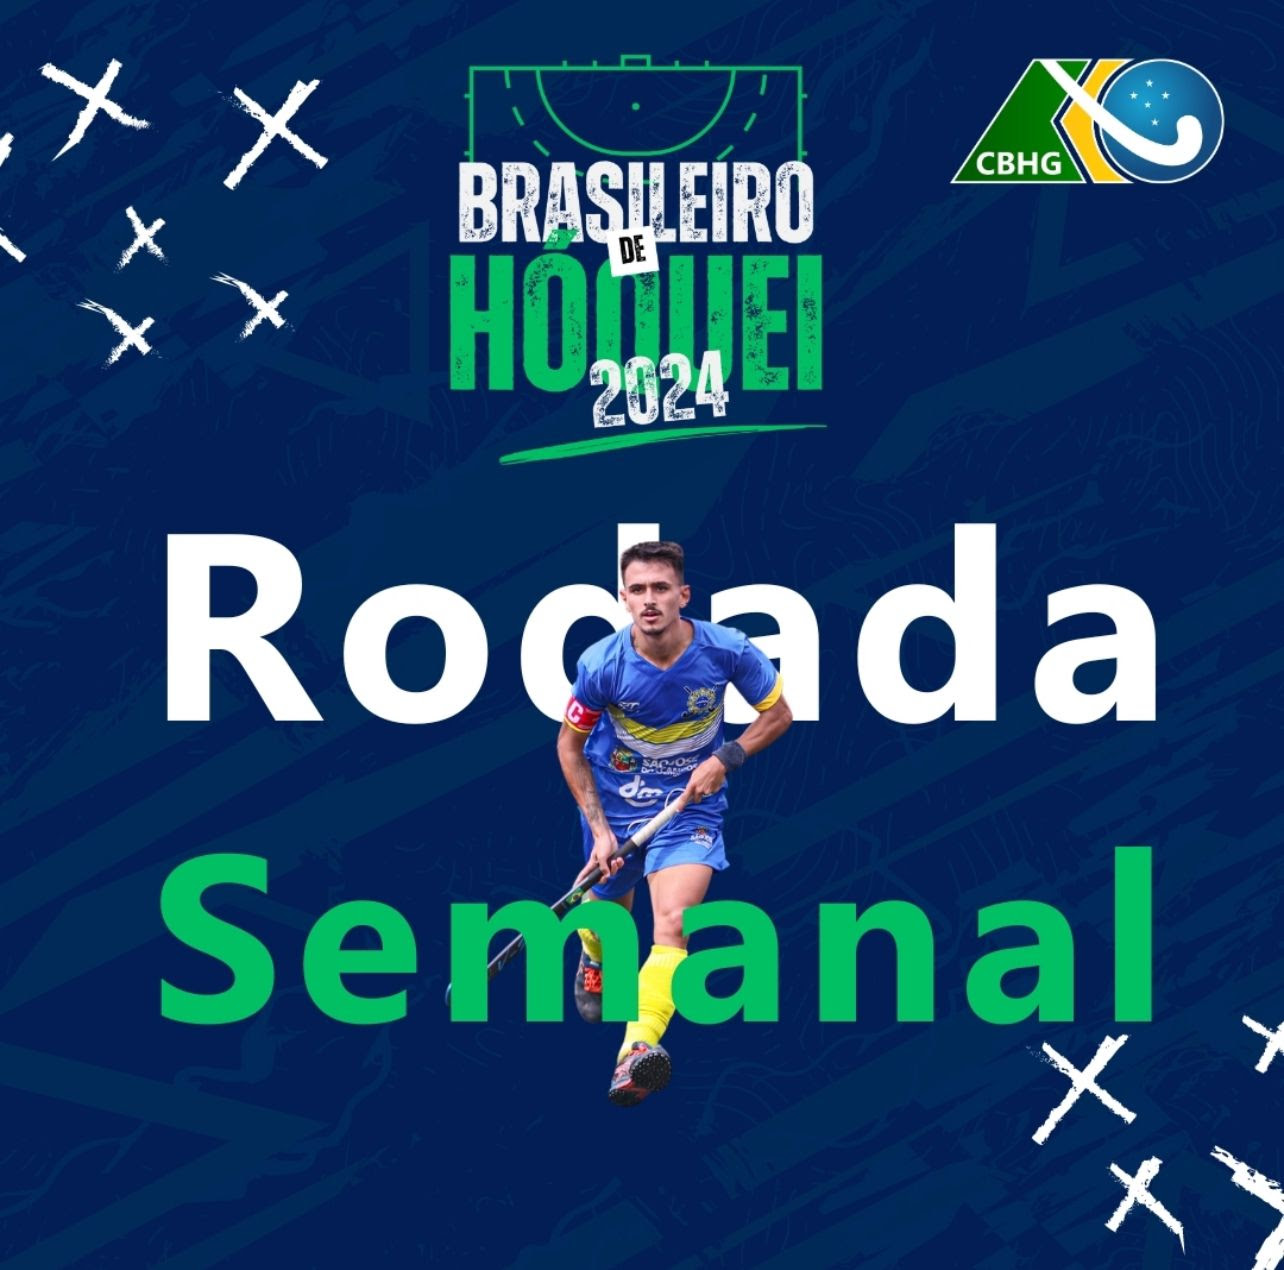 Rodada semanal masculina do Campeonato Brasileiro de Hóquei acontecerá nos 25 e 26 de maio